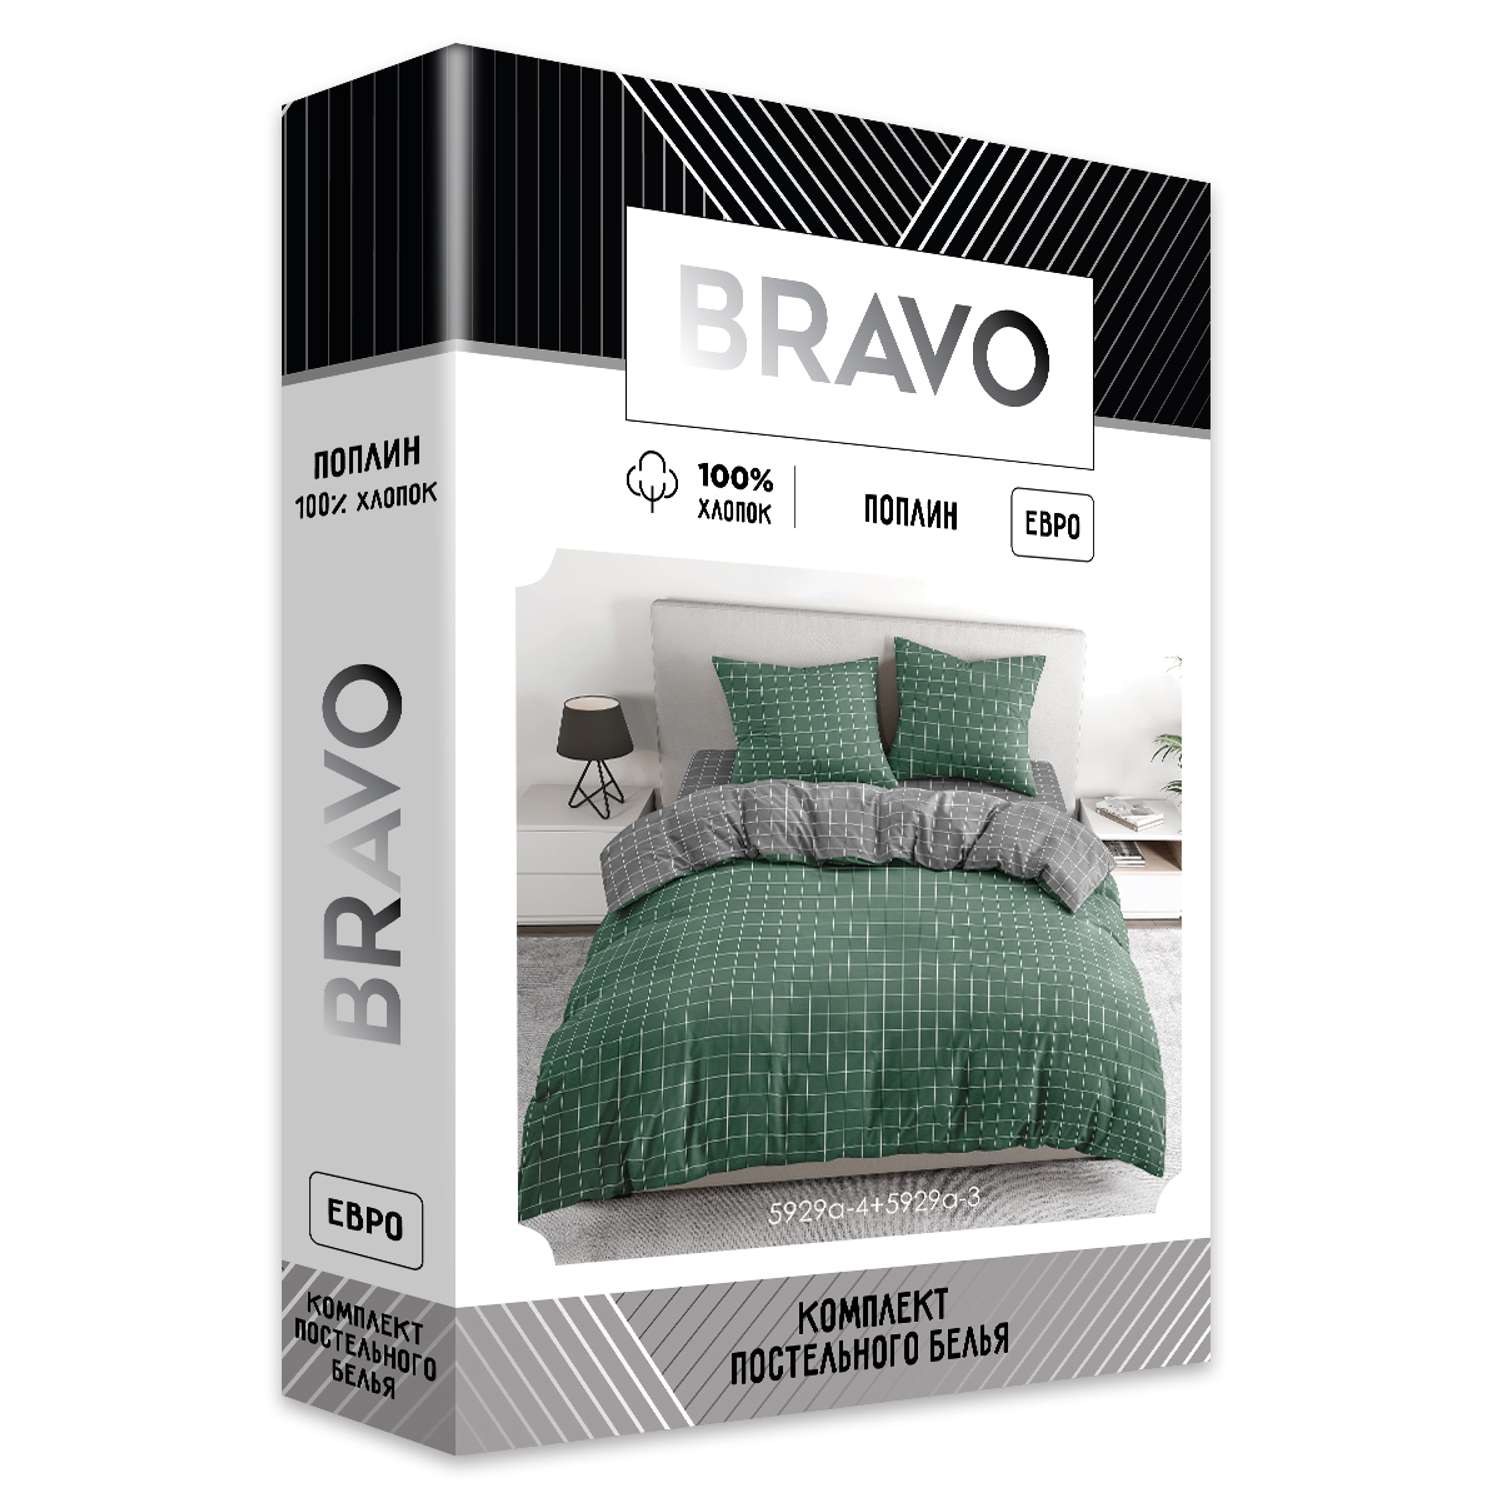 Комплект постельного белья BRAVO Клетка евро наволочка 70х70 рис.5929а-4+5929а-3 зеленый - фото 8